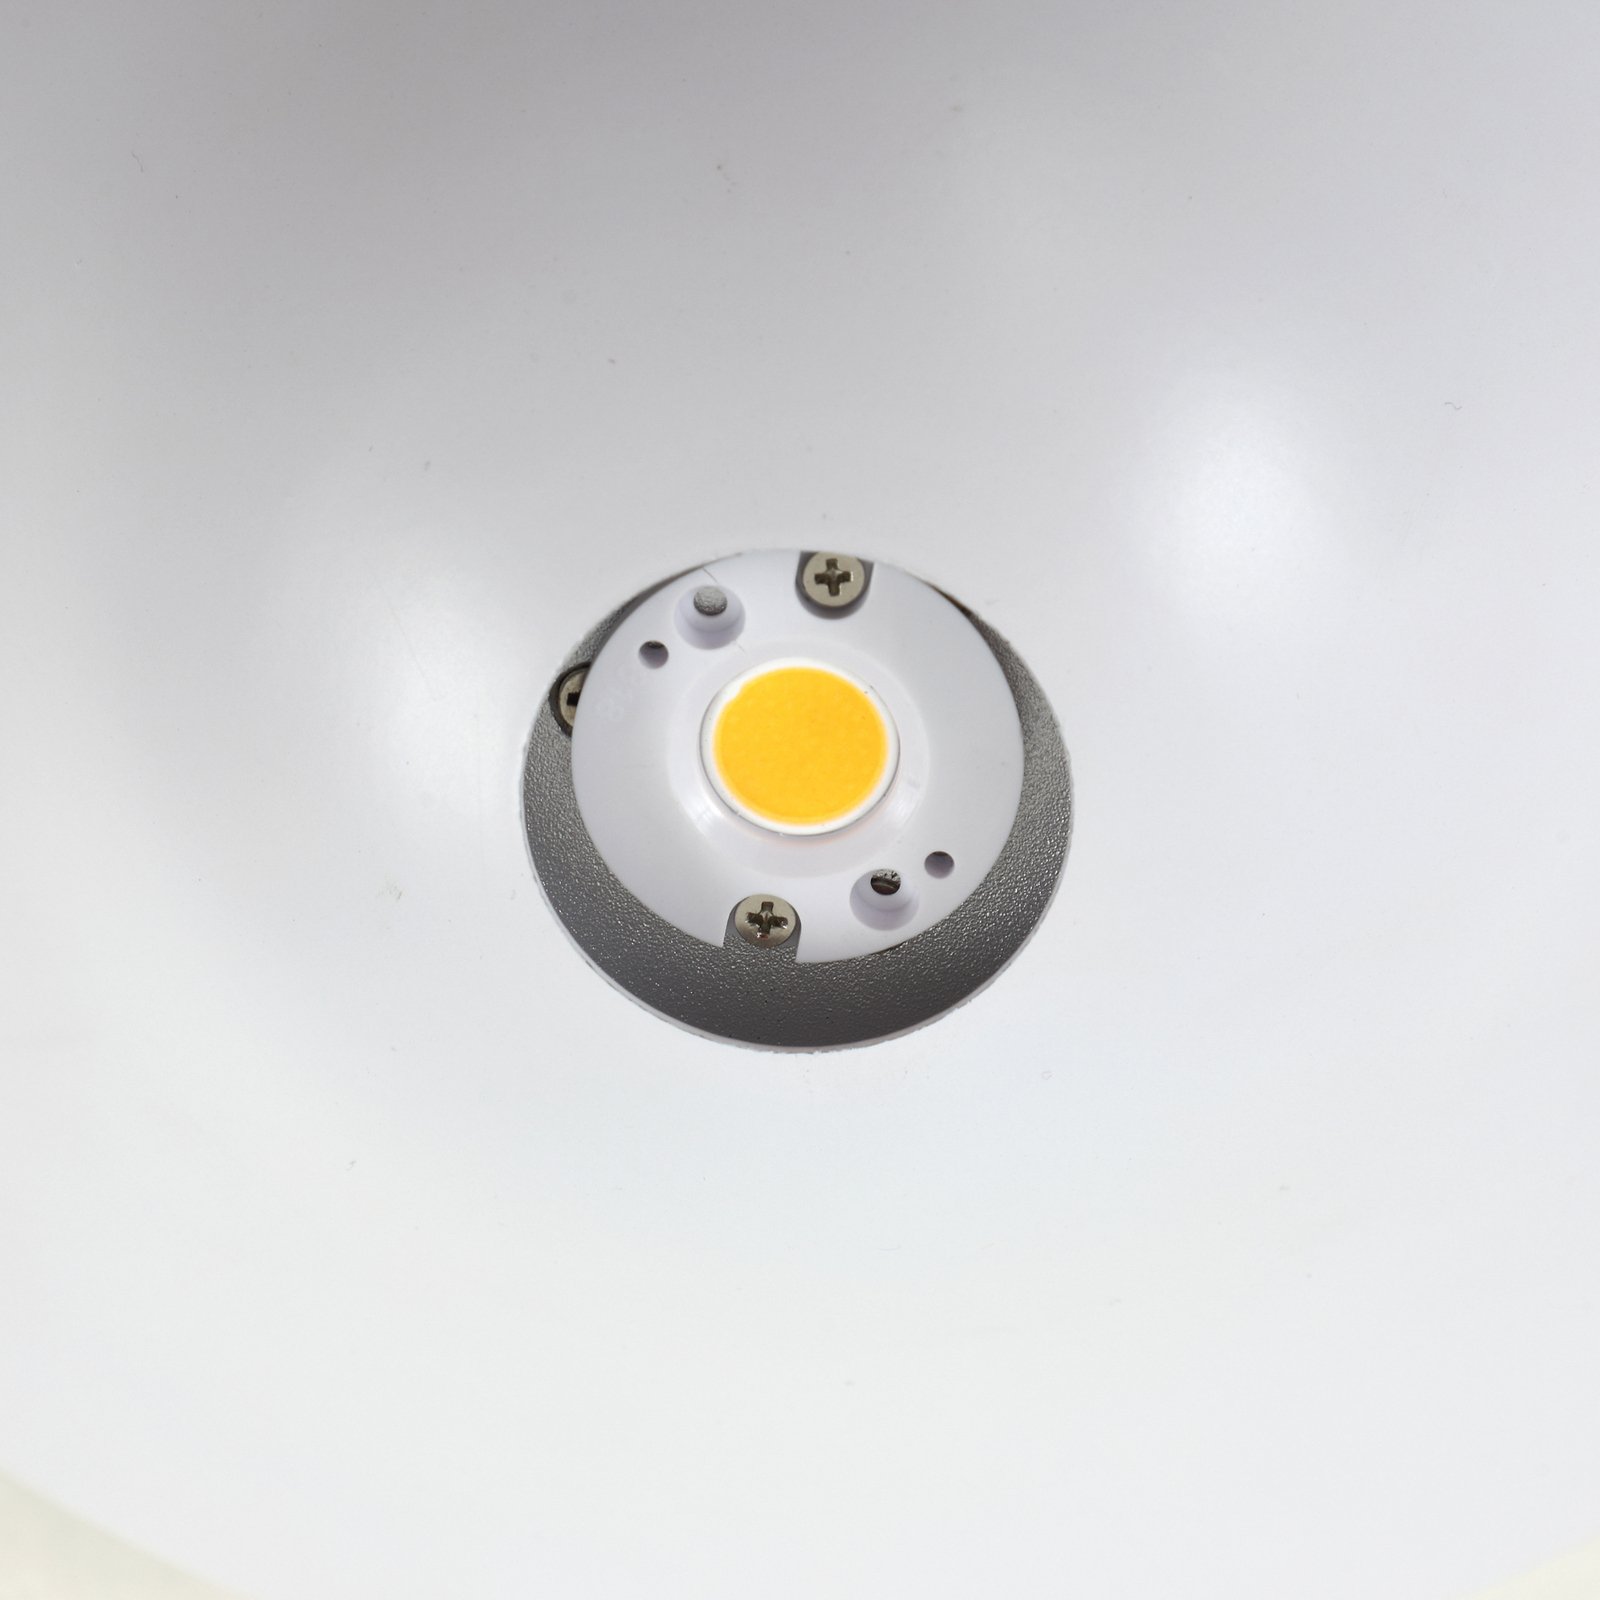 Lucande LED plafondlamp Orasa, glas, wit/helder, Ø 43 cm